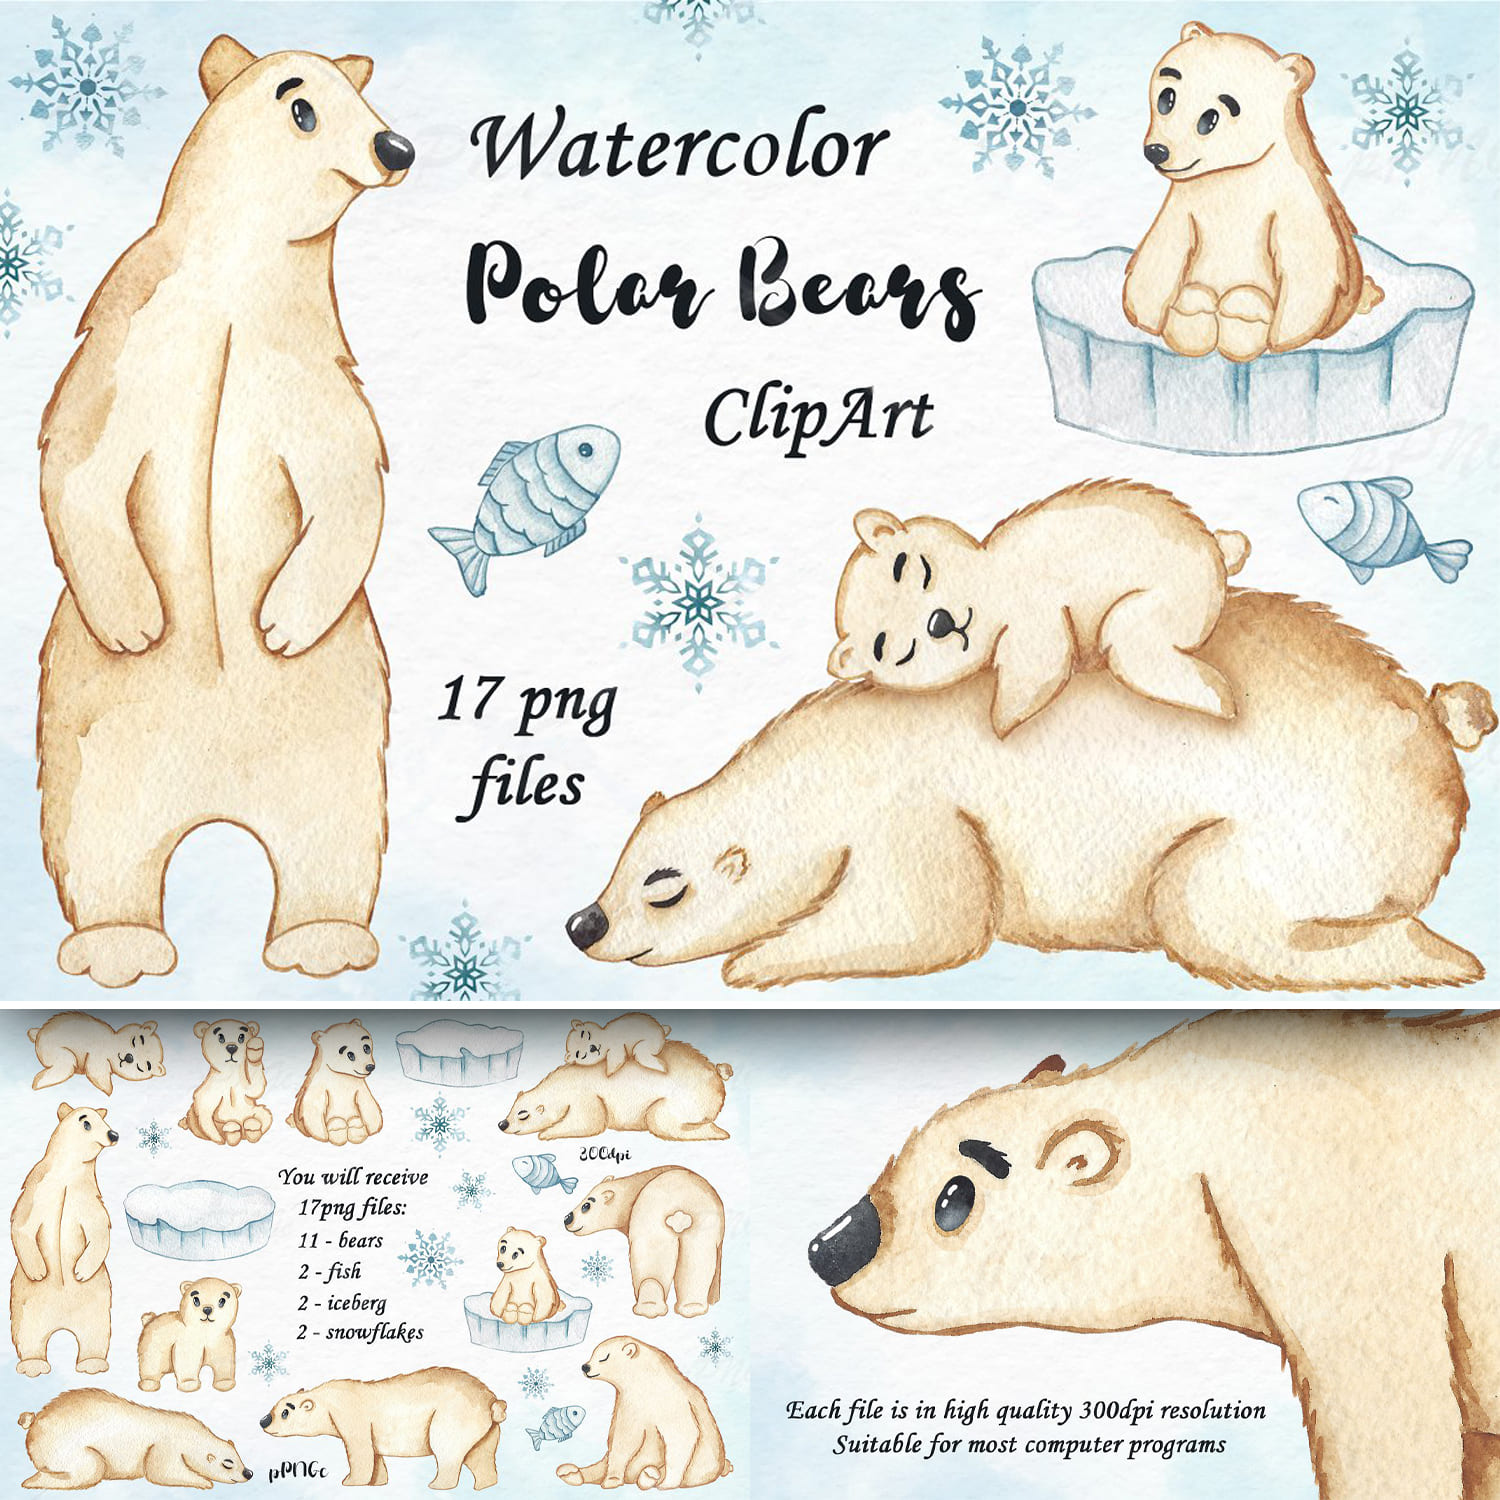 Watercolor Polar Bears Clipart.